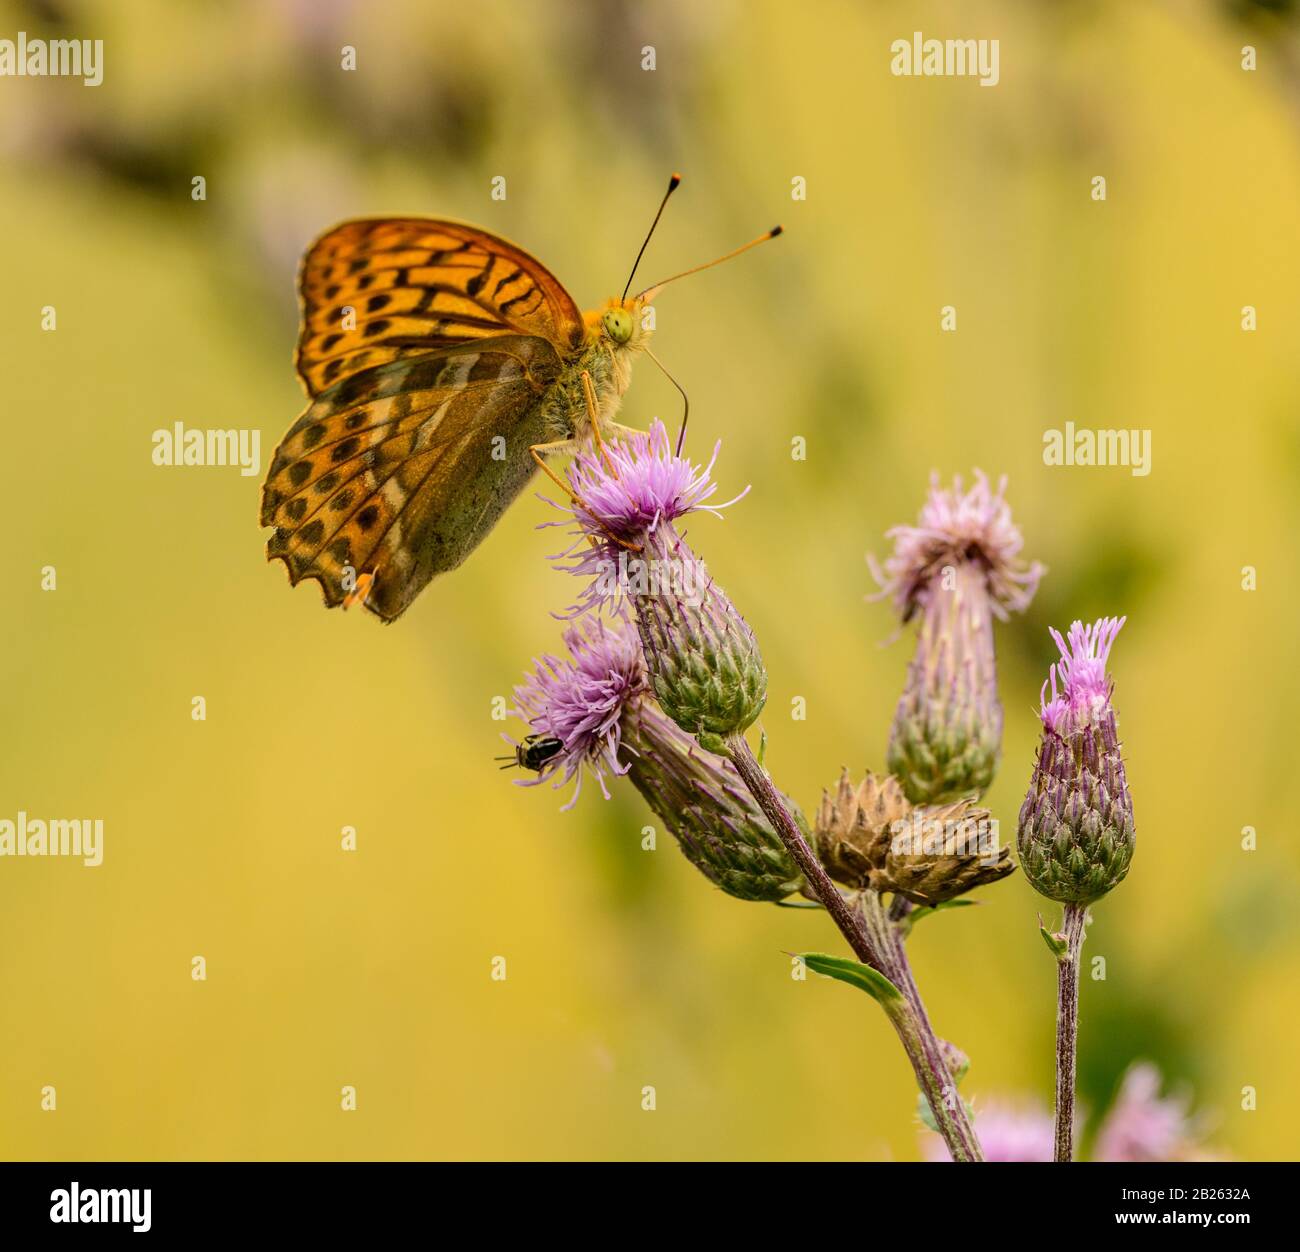 mariposa marrón anaranjada sentada en la flor del cardo, salvaje Foto de stock